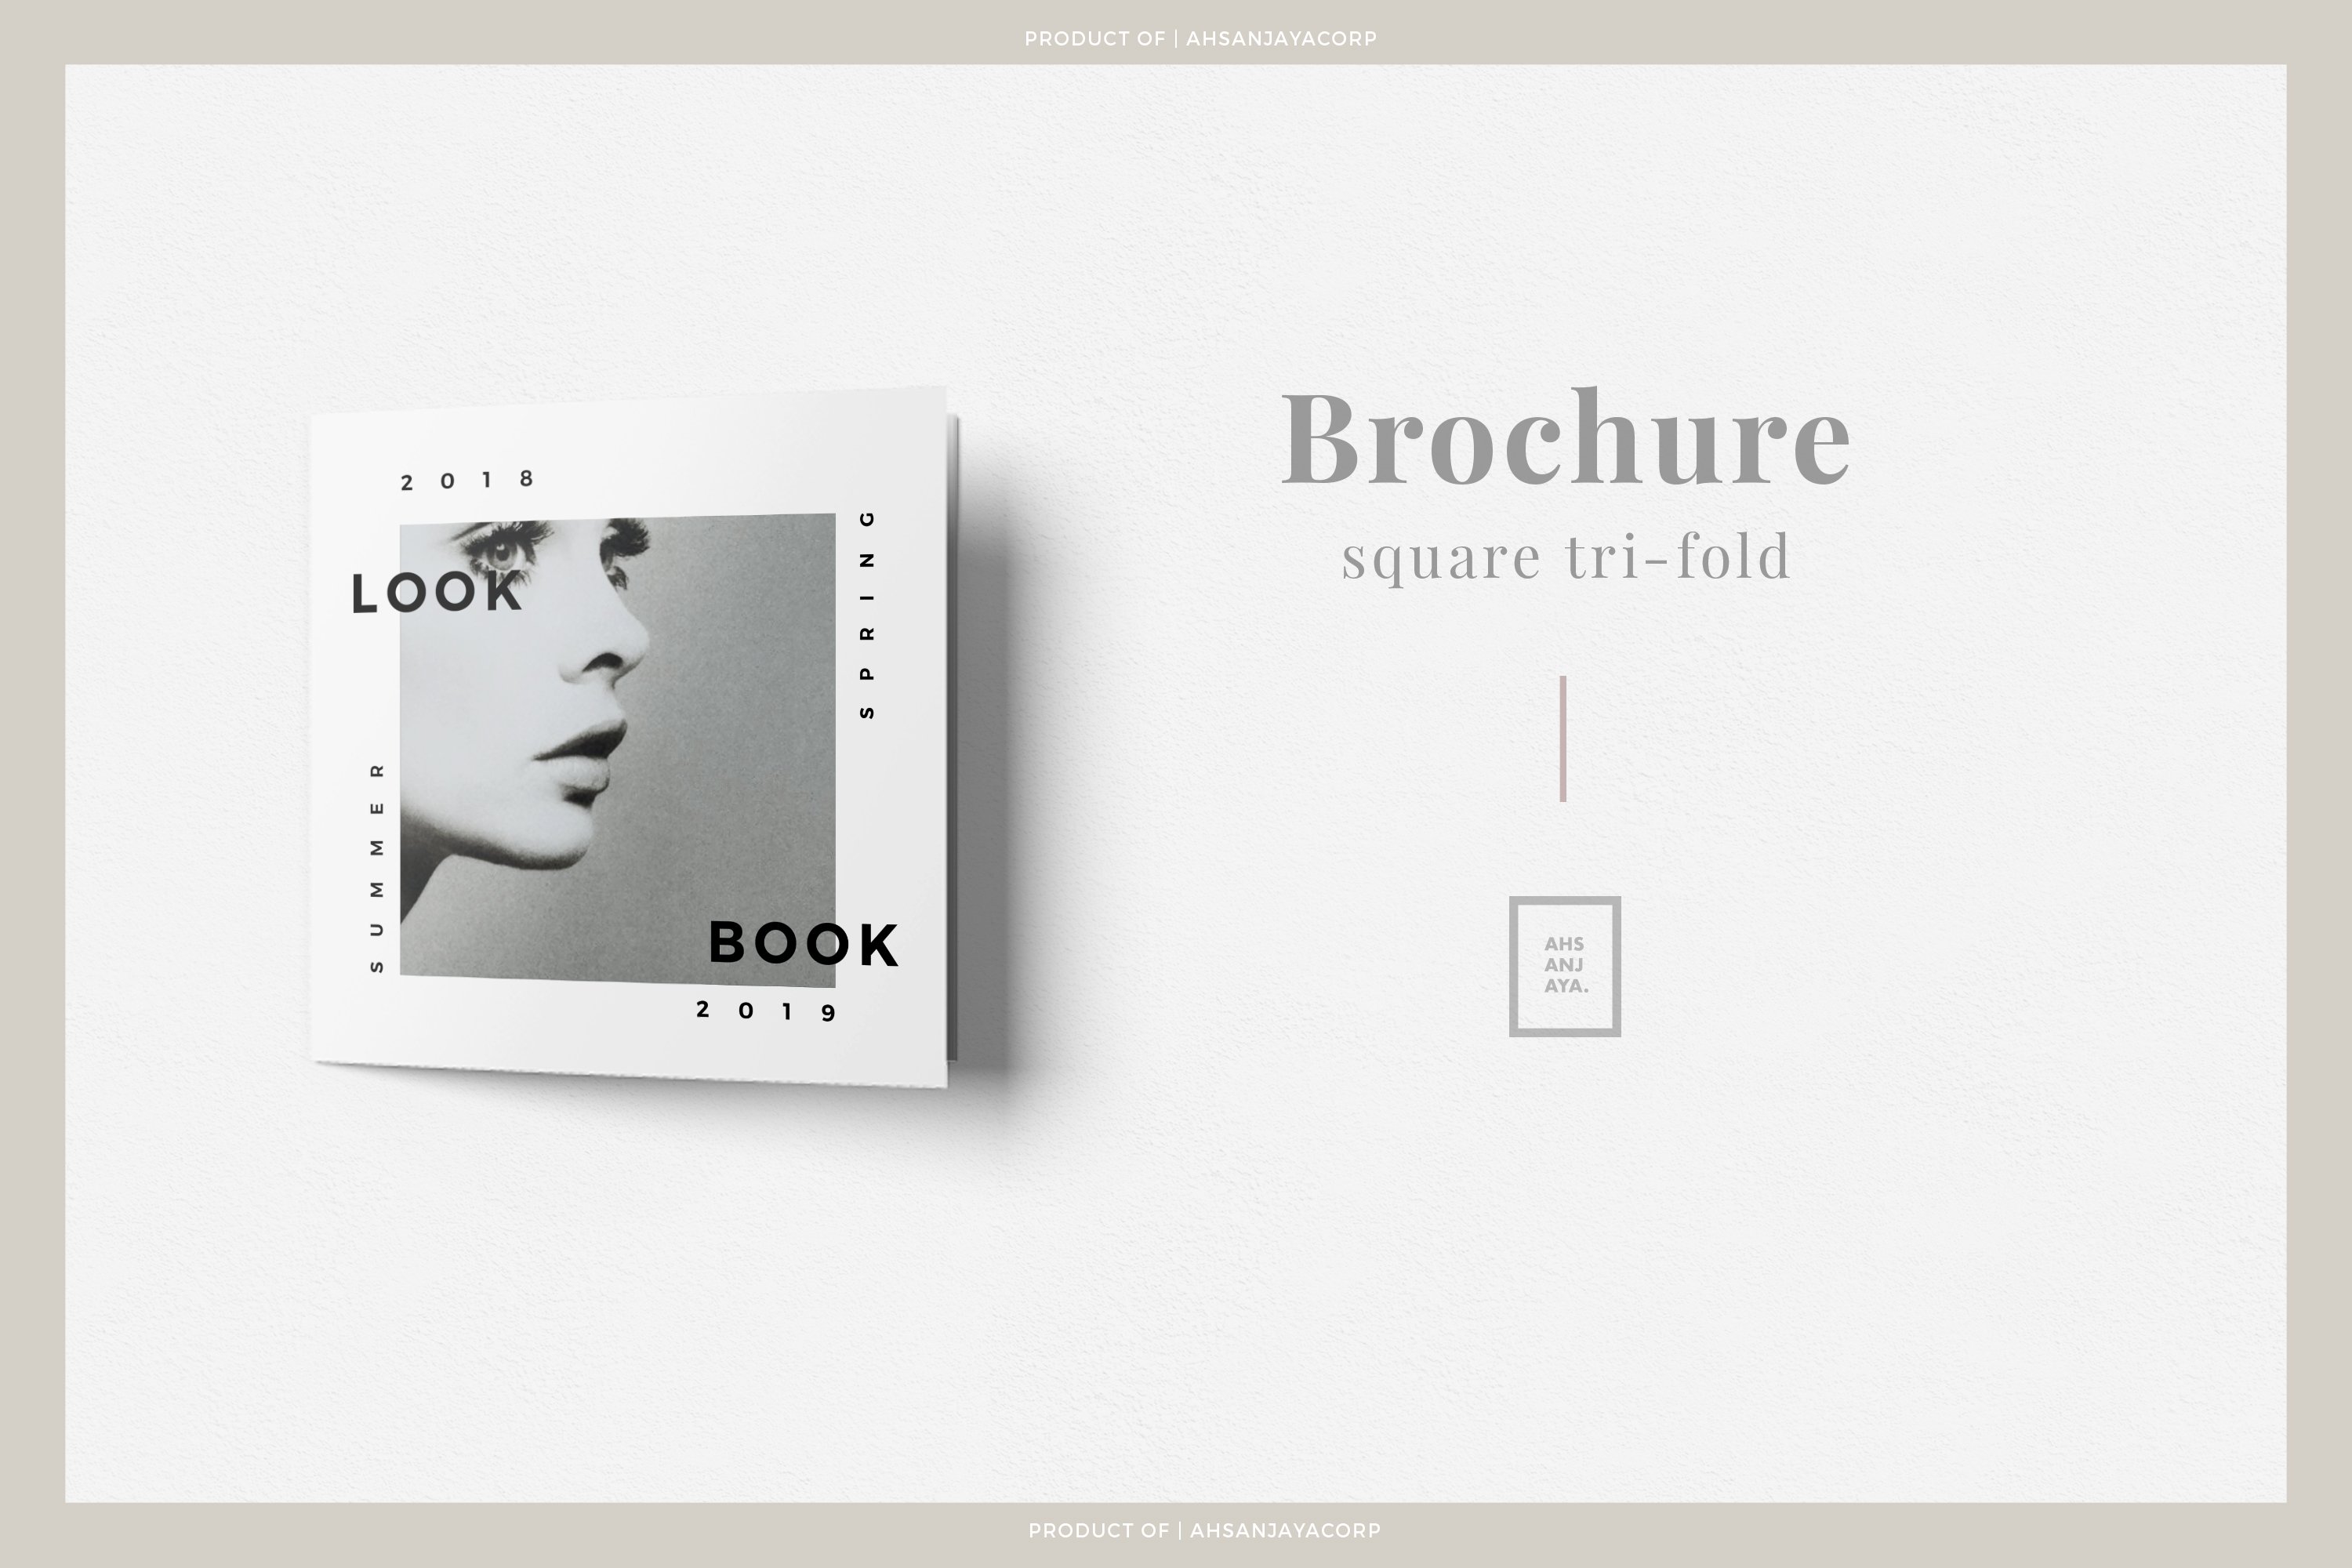 Square fashion tri-fold Brochure cover image.